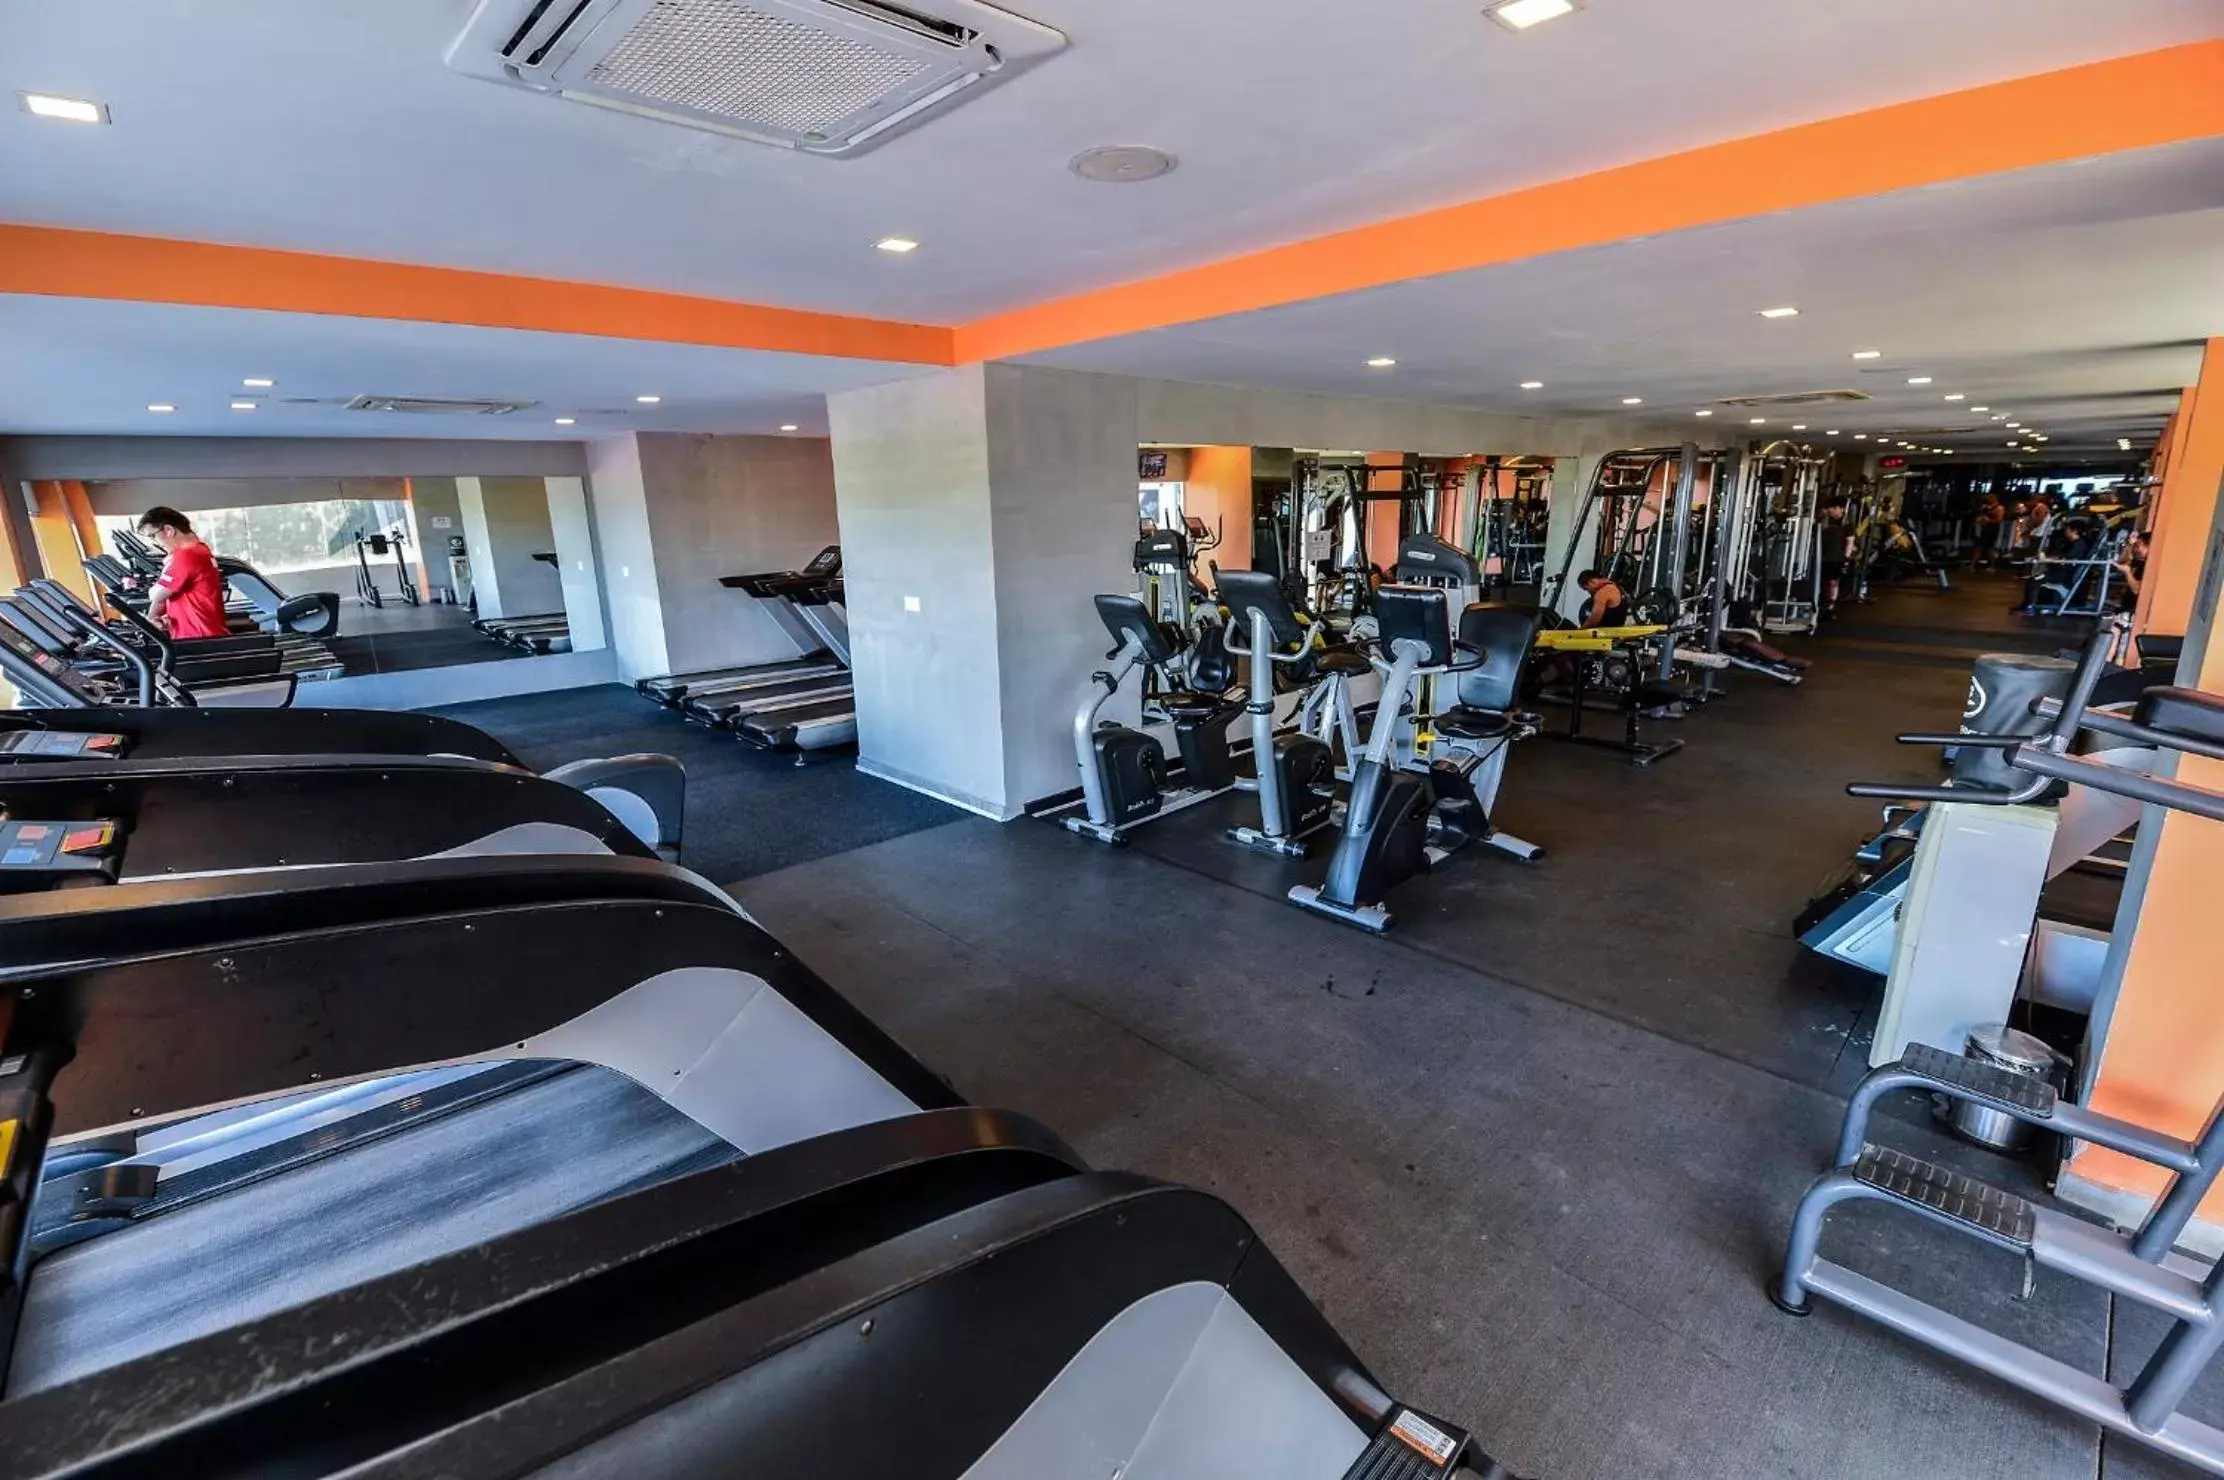 Fitness centre/facilities, Fitness Center/Facilities in Queenco Hotel & Casino